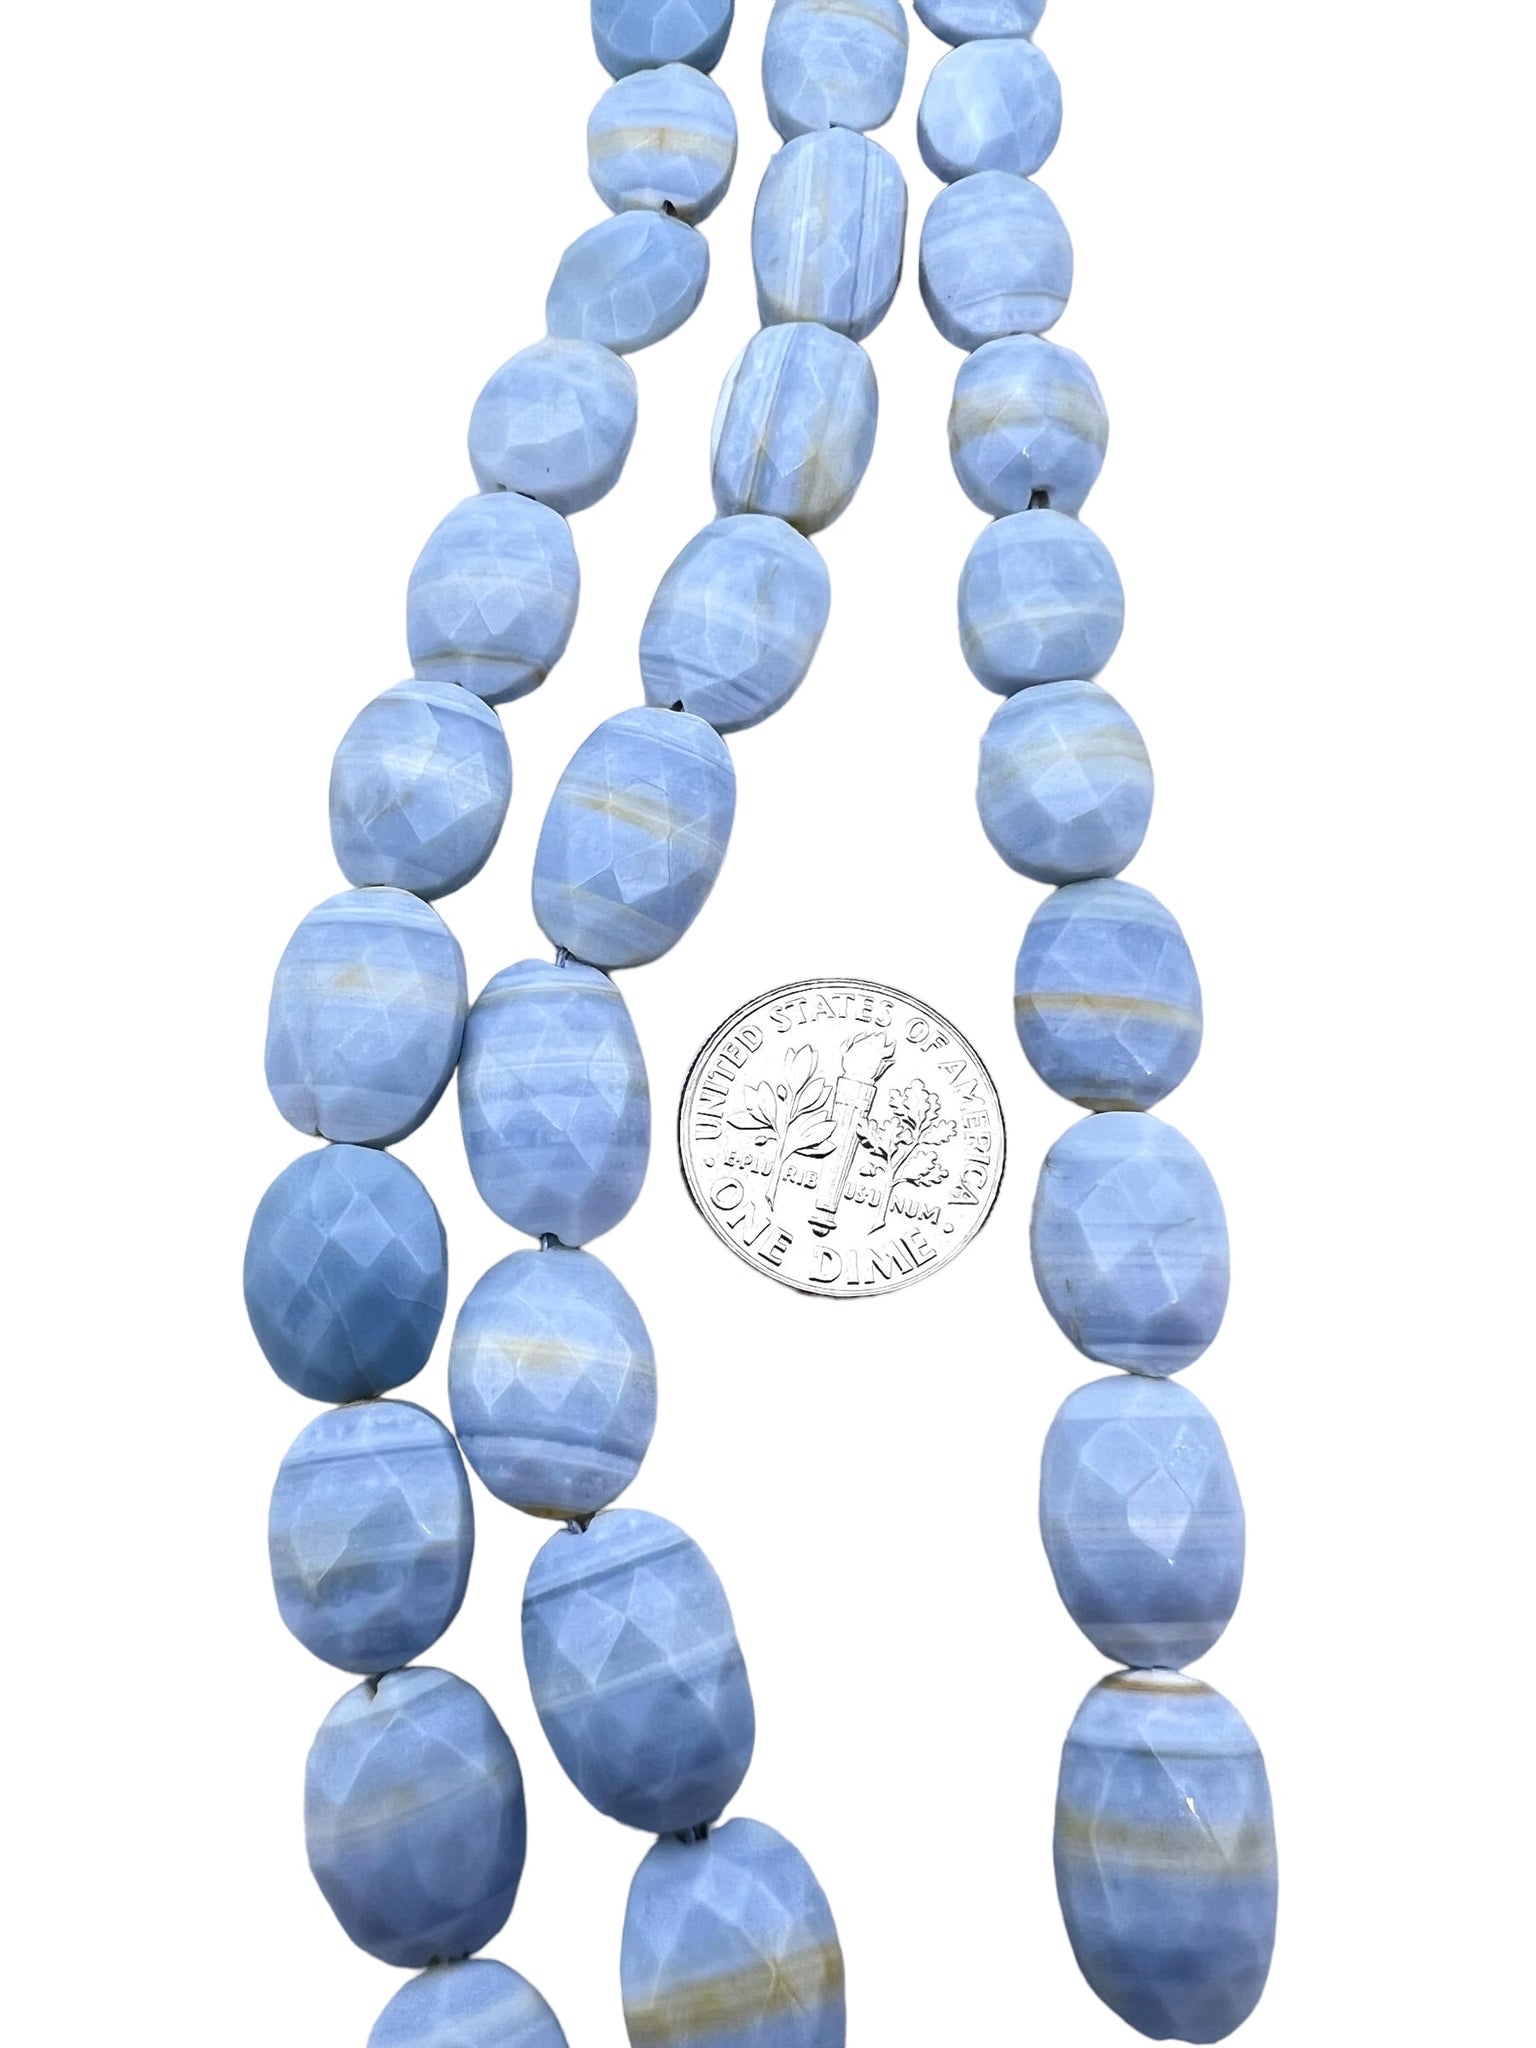 Owyhee Blue Opal (Oregon) 10x13mm Faceted Oval Beads (8 in